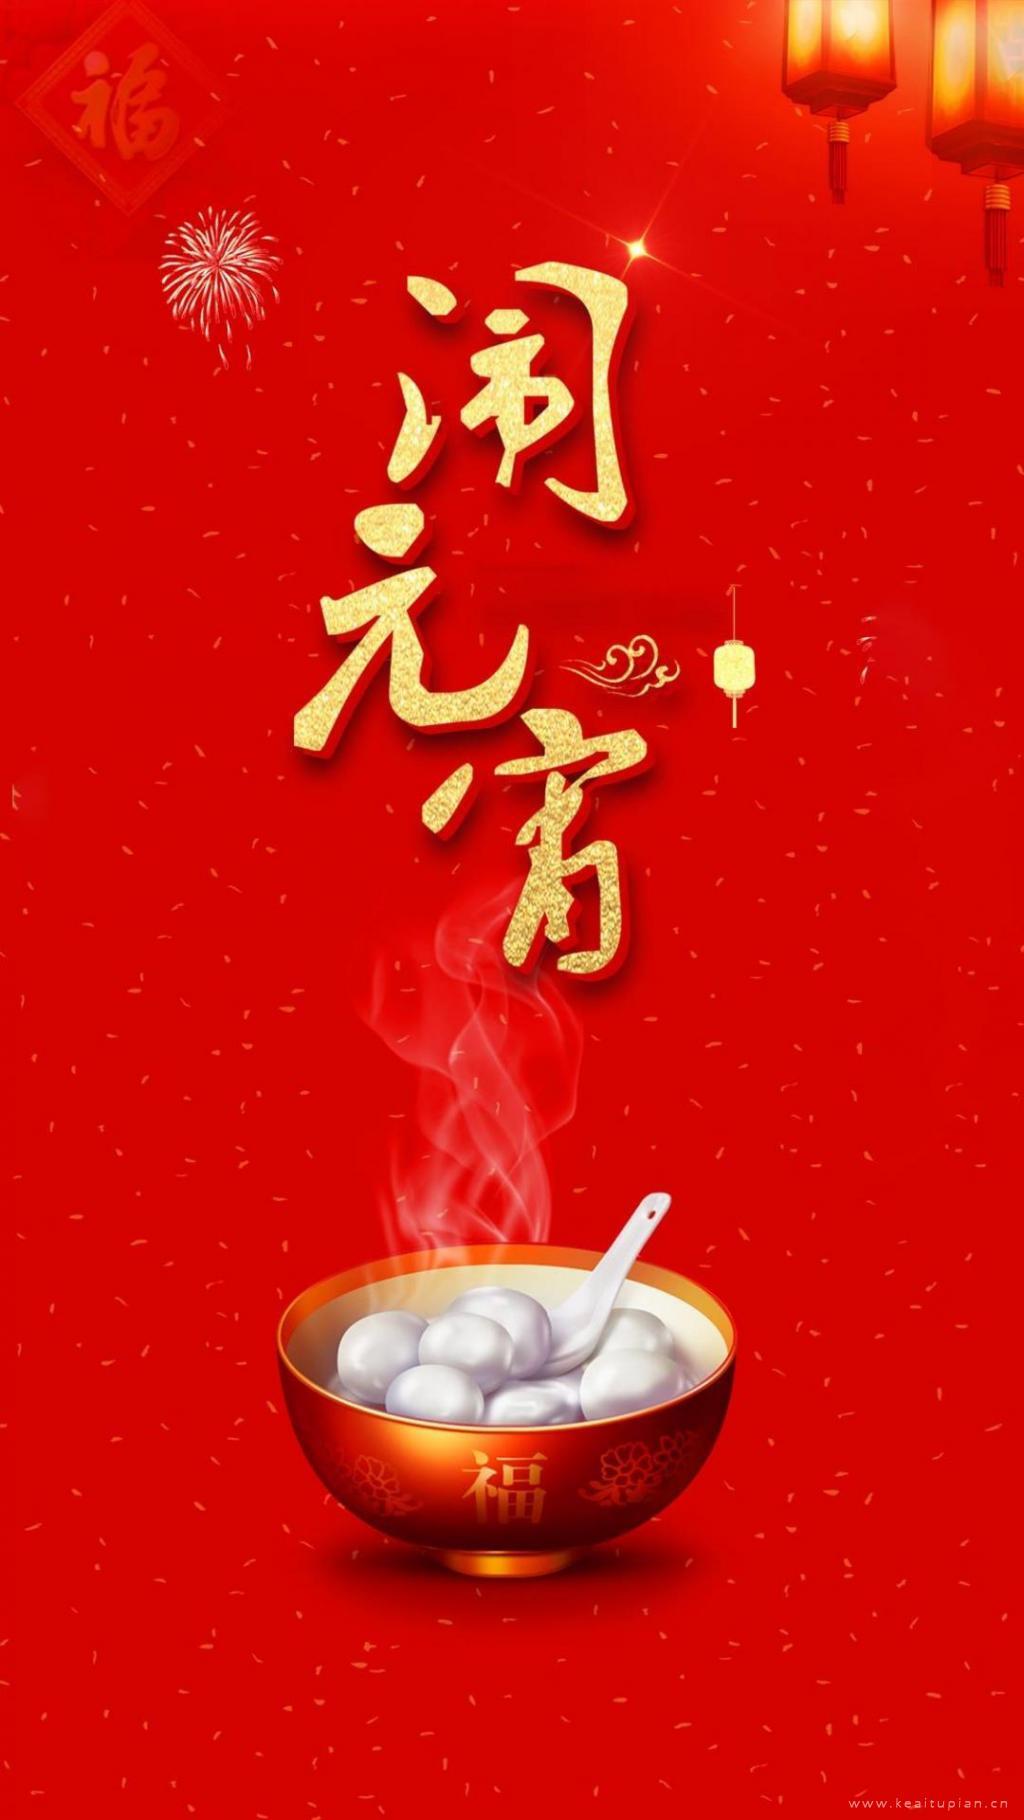 喜庆元宵佳节开心吃汤圆的创意图片